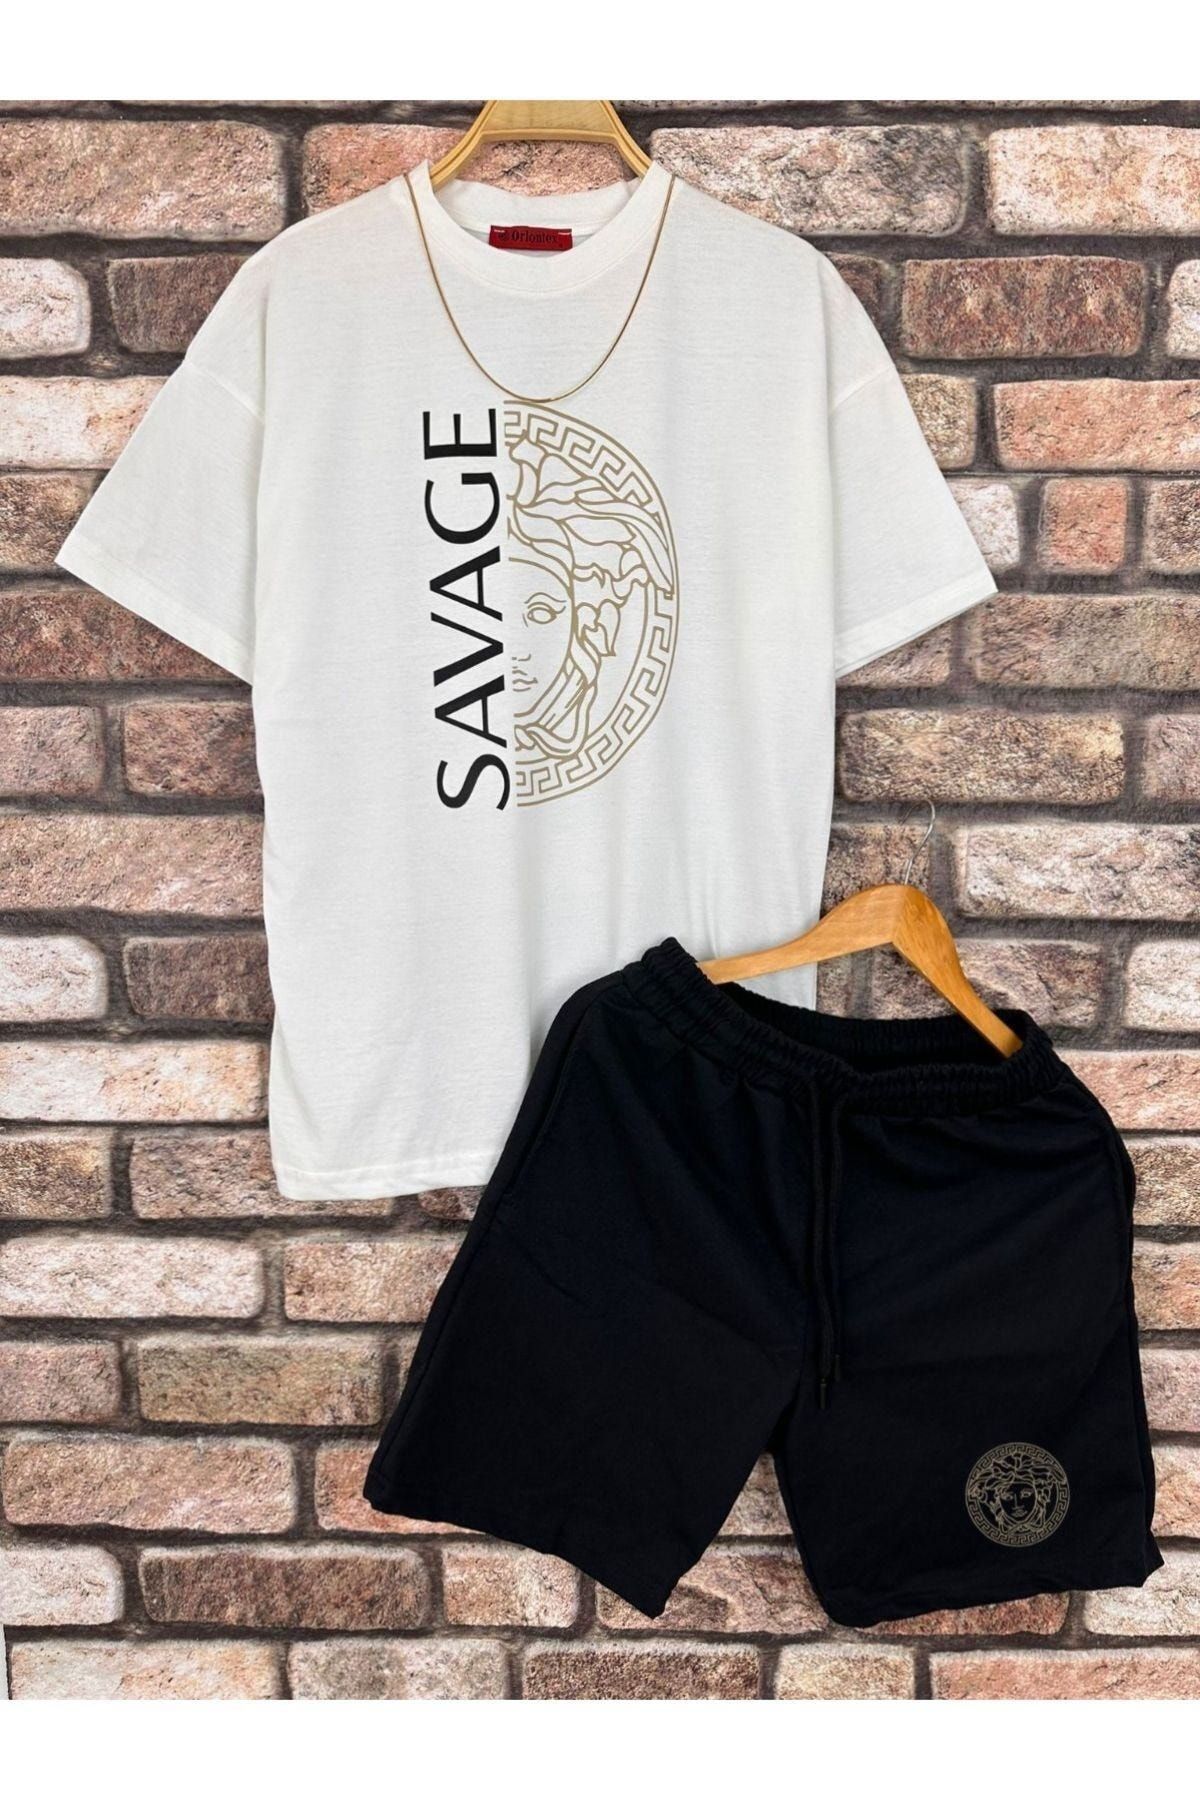 Hunors Sportswear & Company Erkek Beyaz Savage Baskılı Oversize Bisiklet Yaka T-shirt Şort Takım